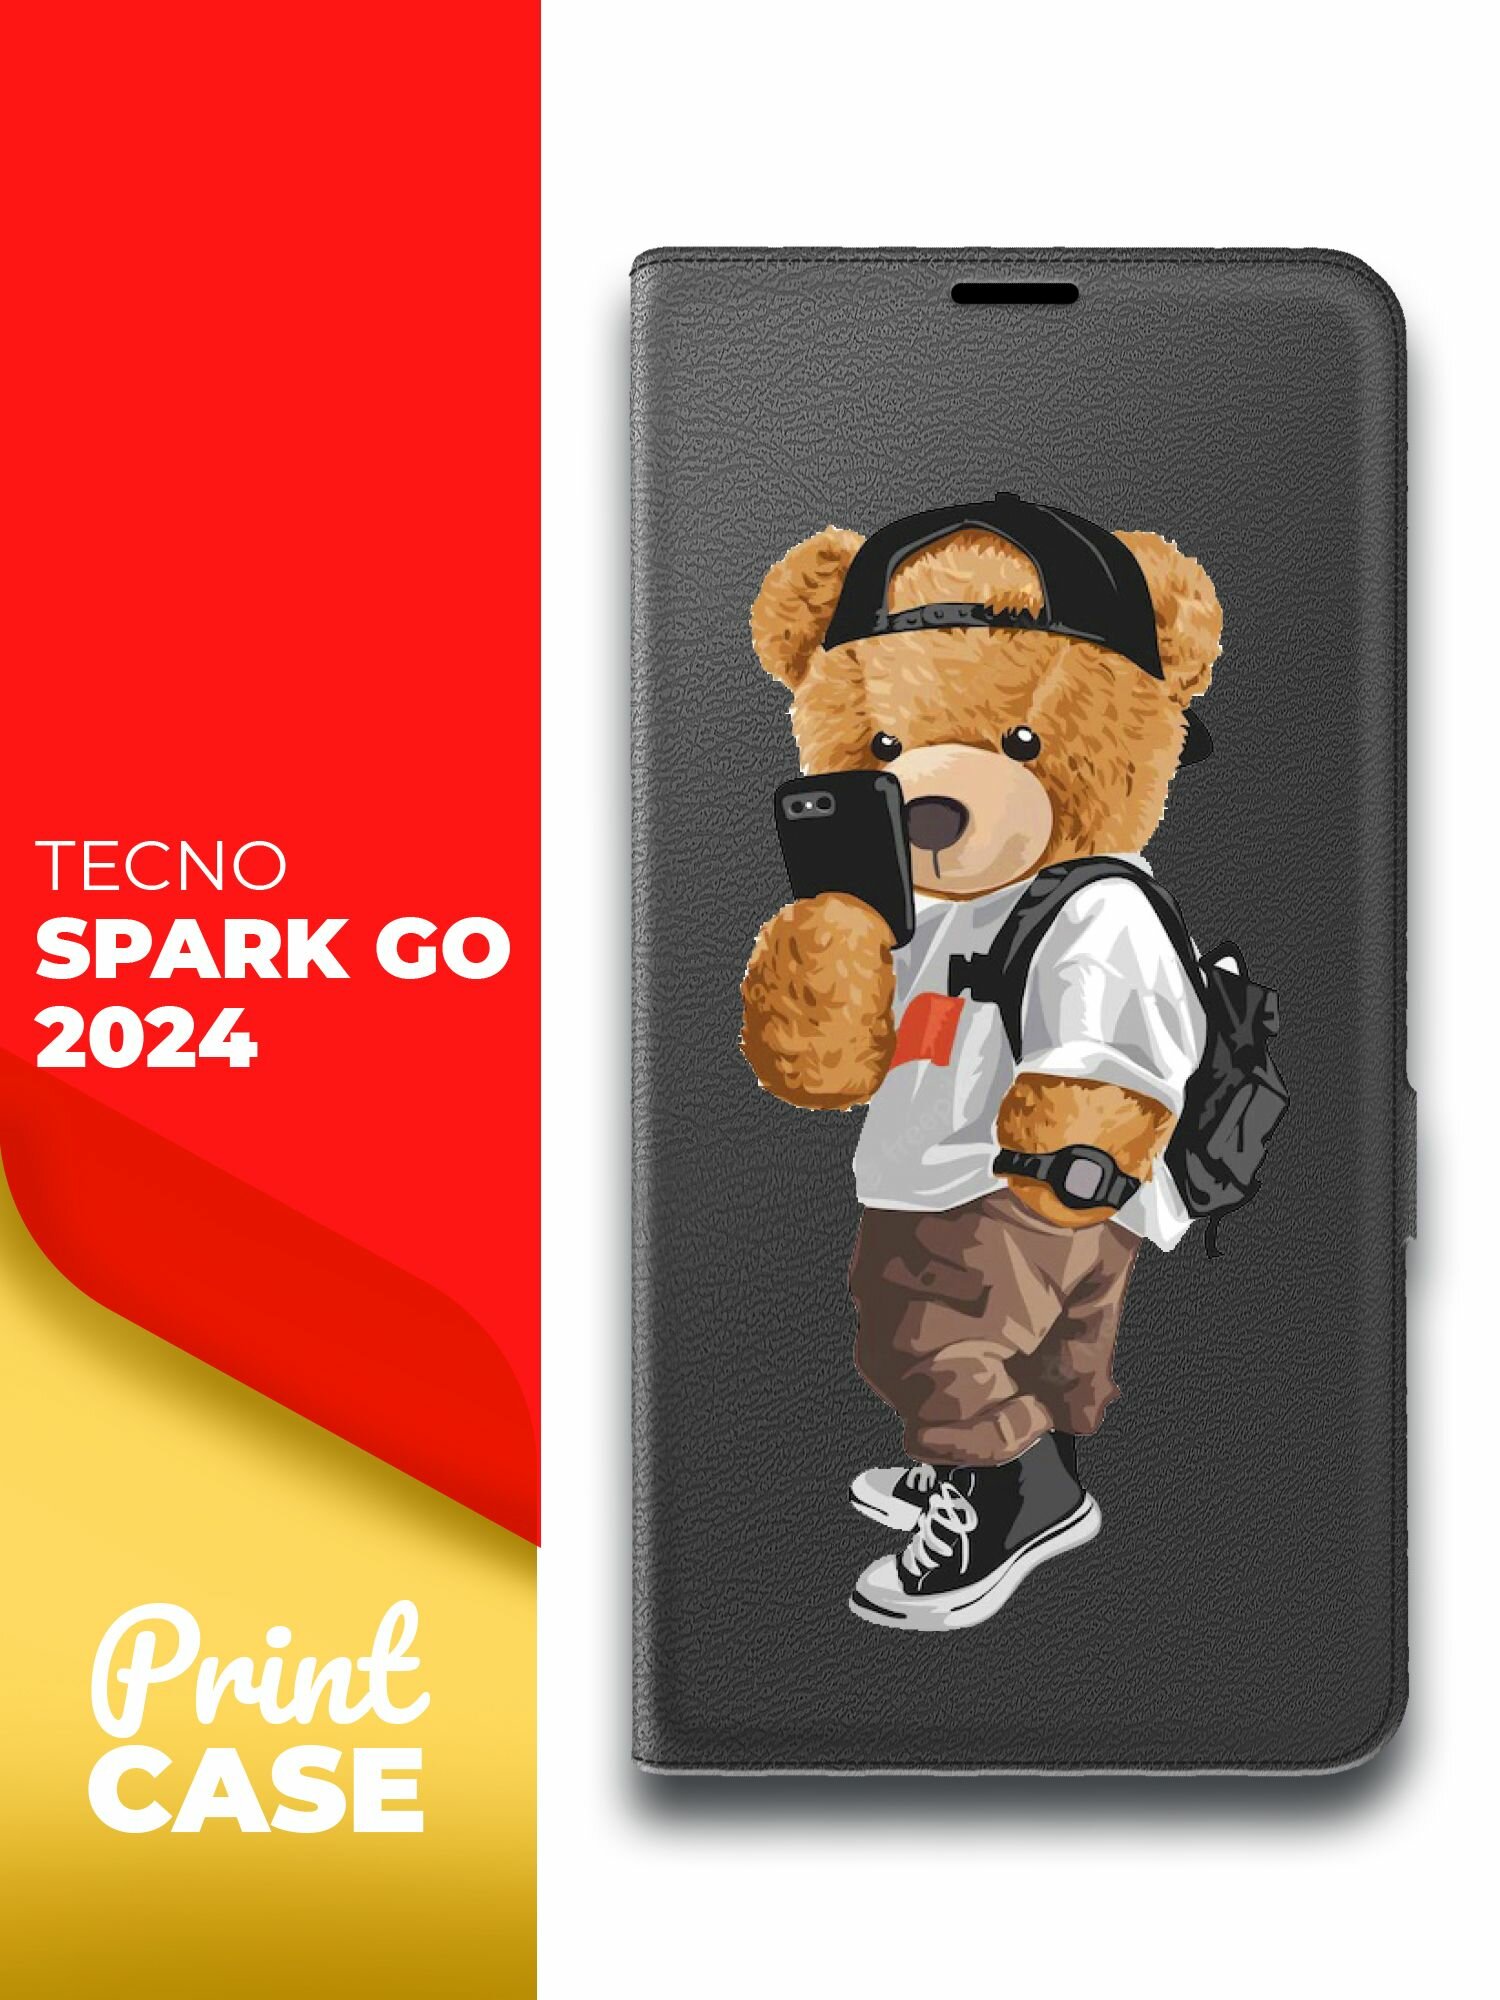 Чехол на Tecno Spark Go 2024 (Техно Спарк Гоу 2024) черный книжка эко-кожа подставка отделение для карт магнит Book case Miuko (принт) Мишка Смартфон